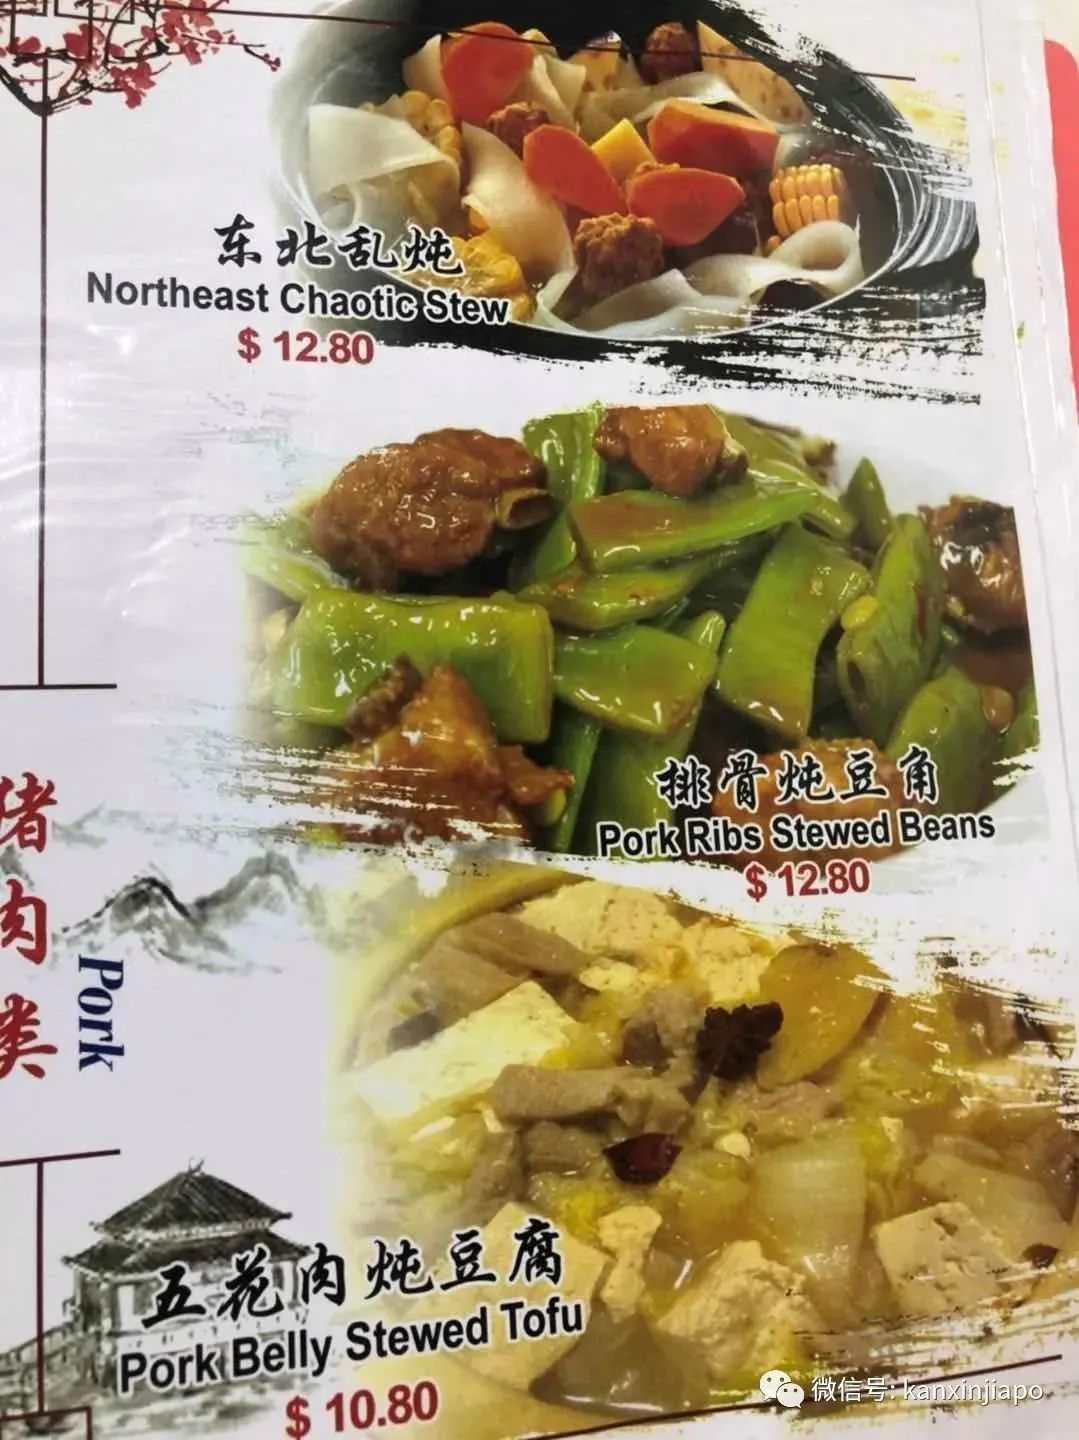 新加坡18家中餐外賣讓你足不出戶享美味